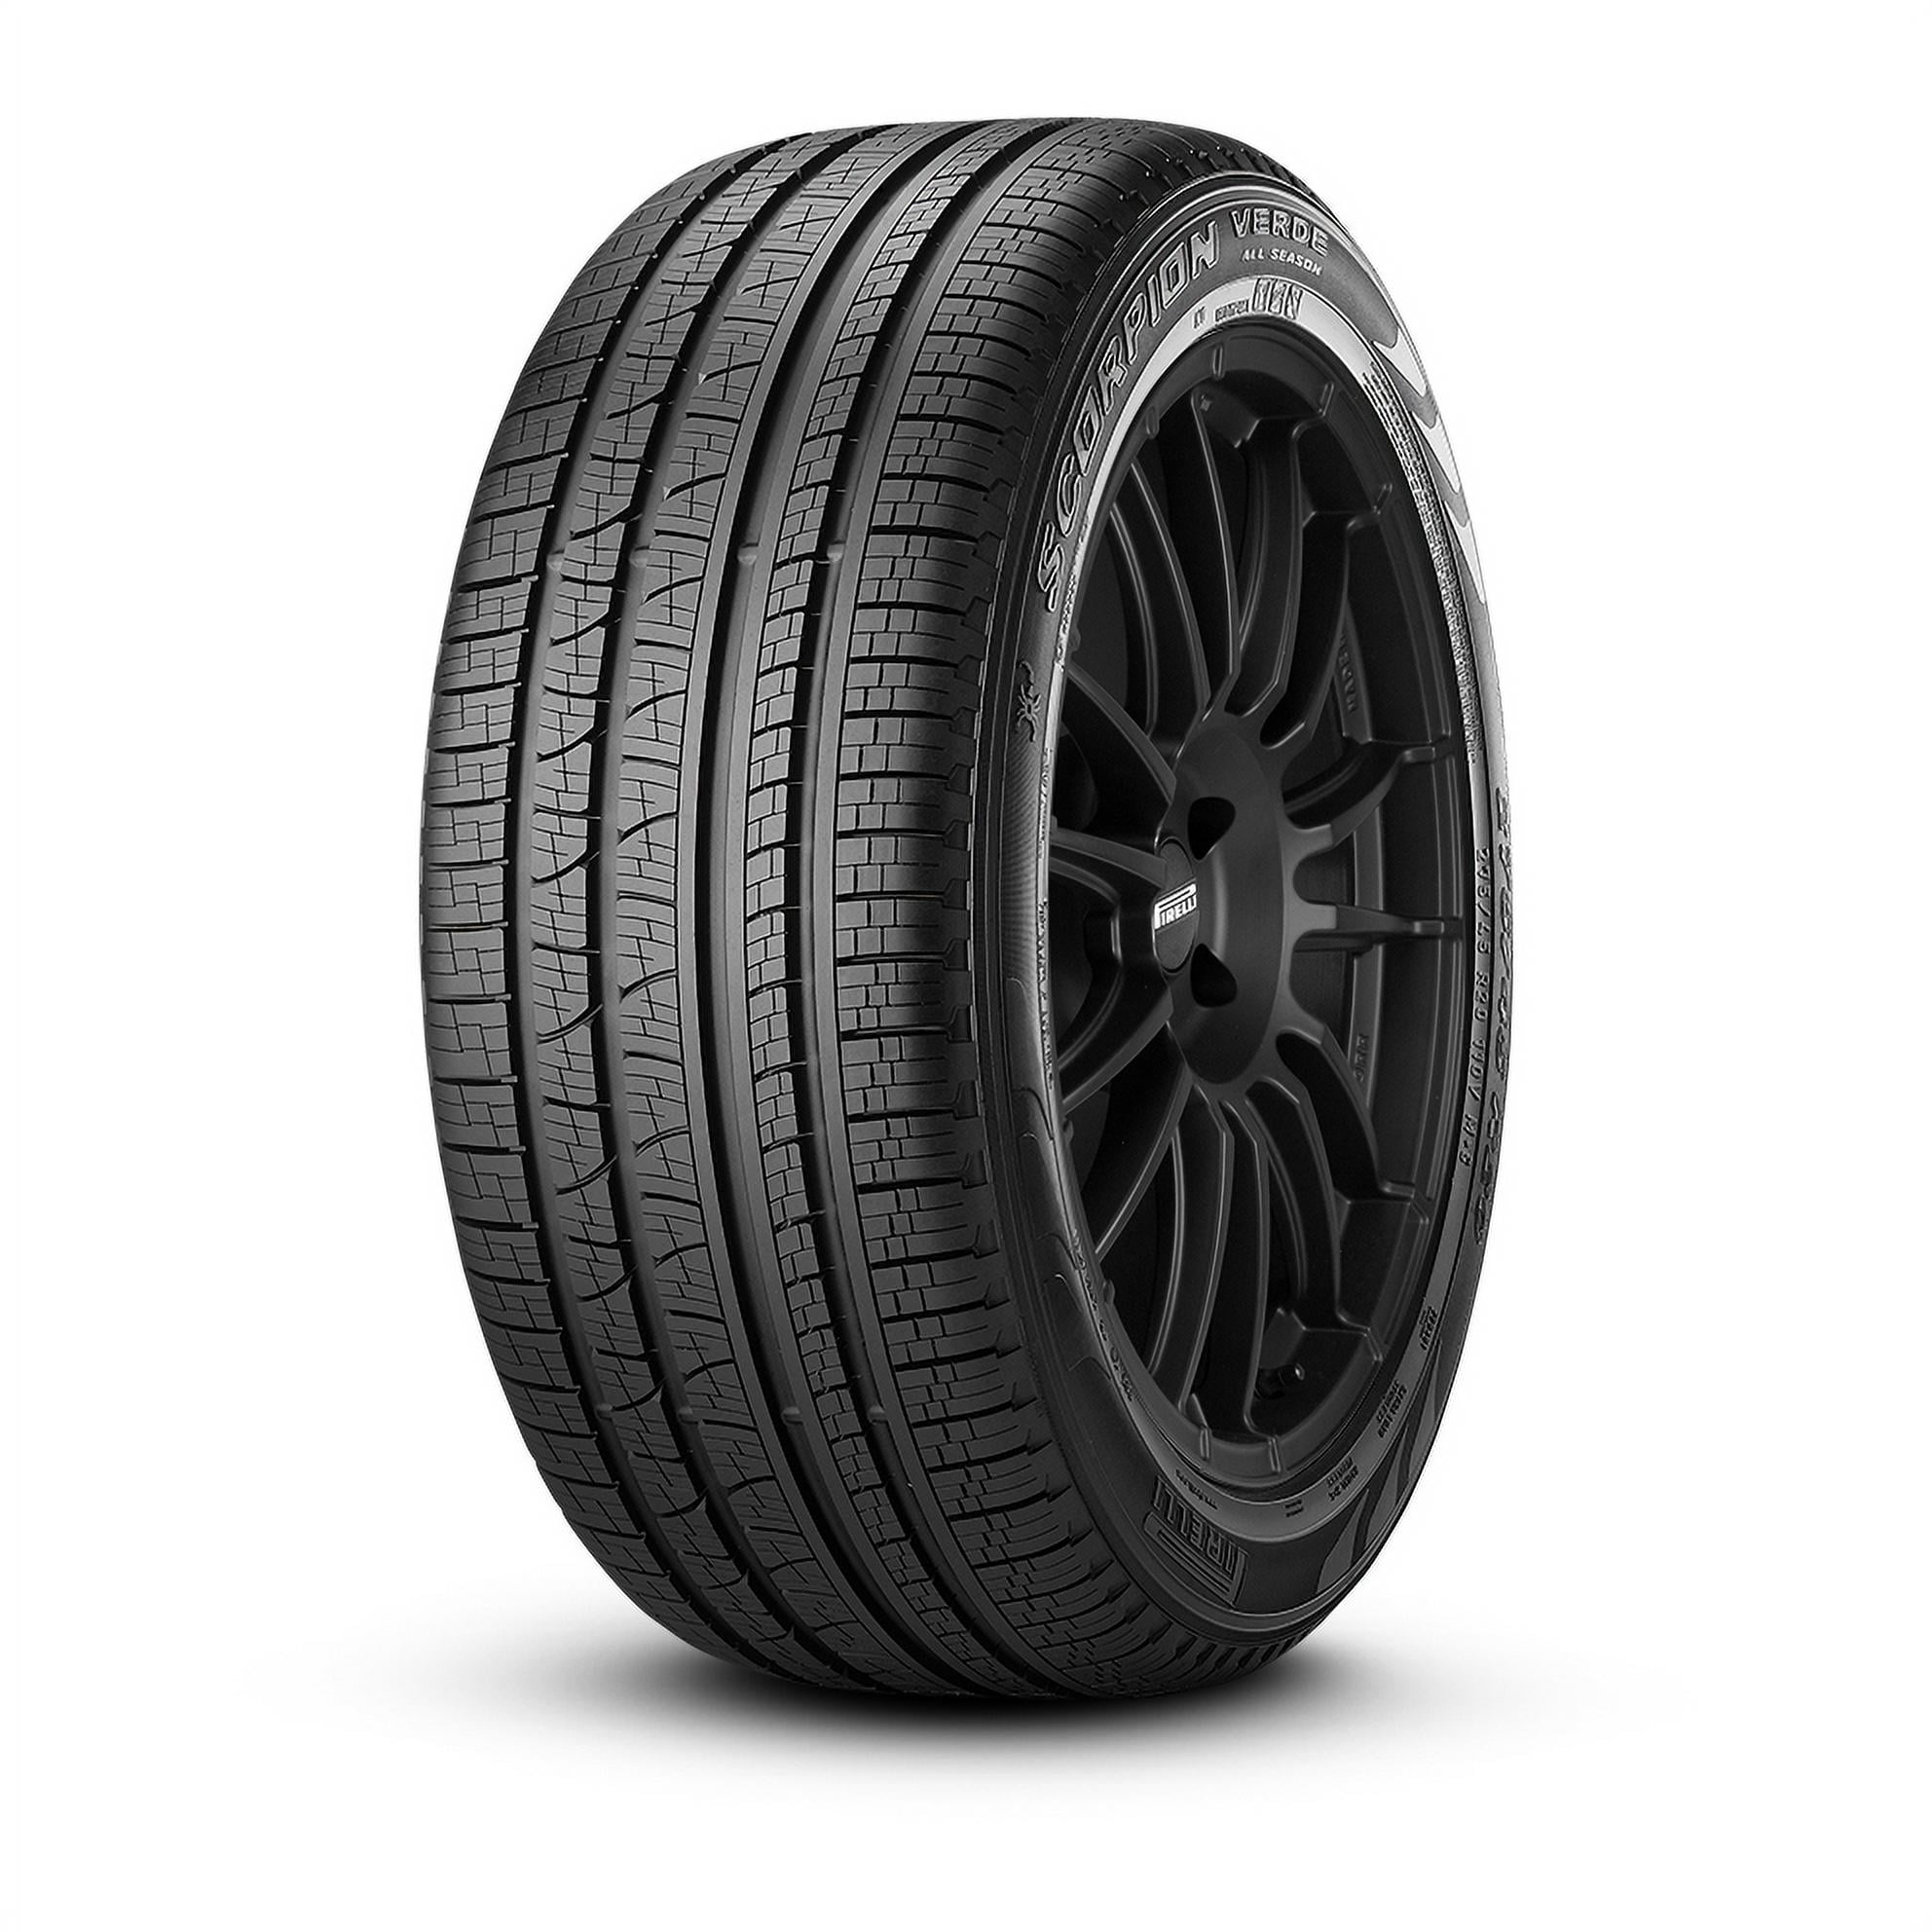 2X Tyres 255 55 R18 109W XL HIFLY HP801 M+S SUV 4X4 E E 73dB 